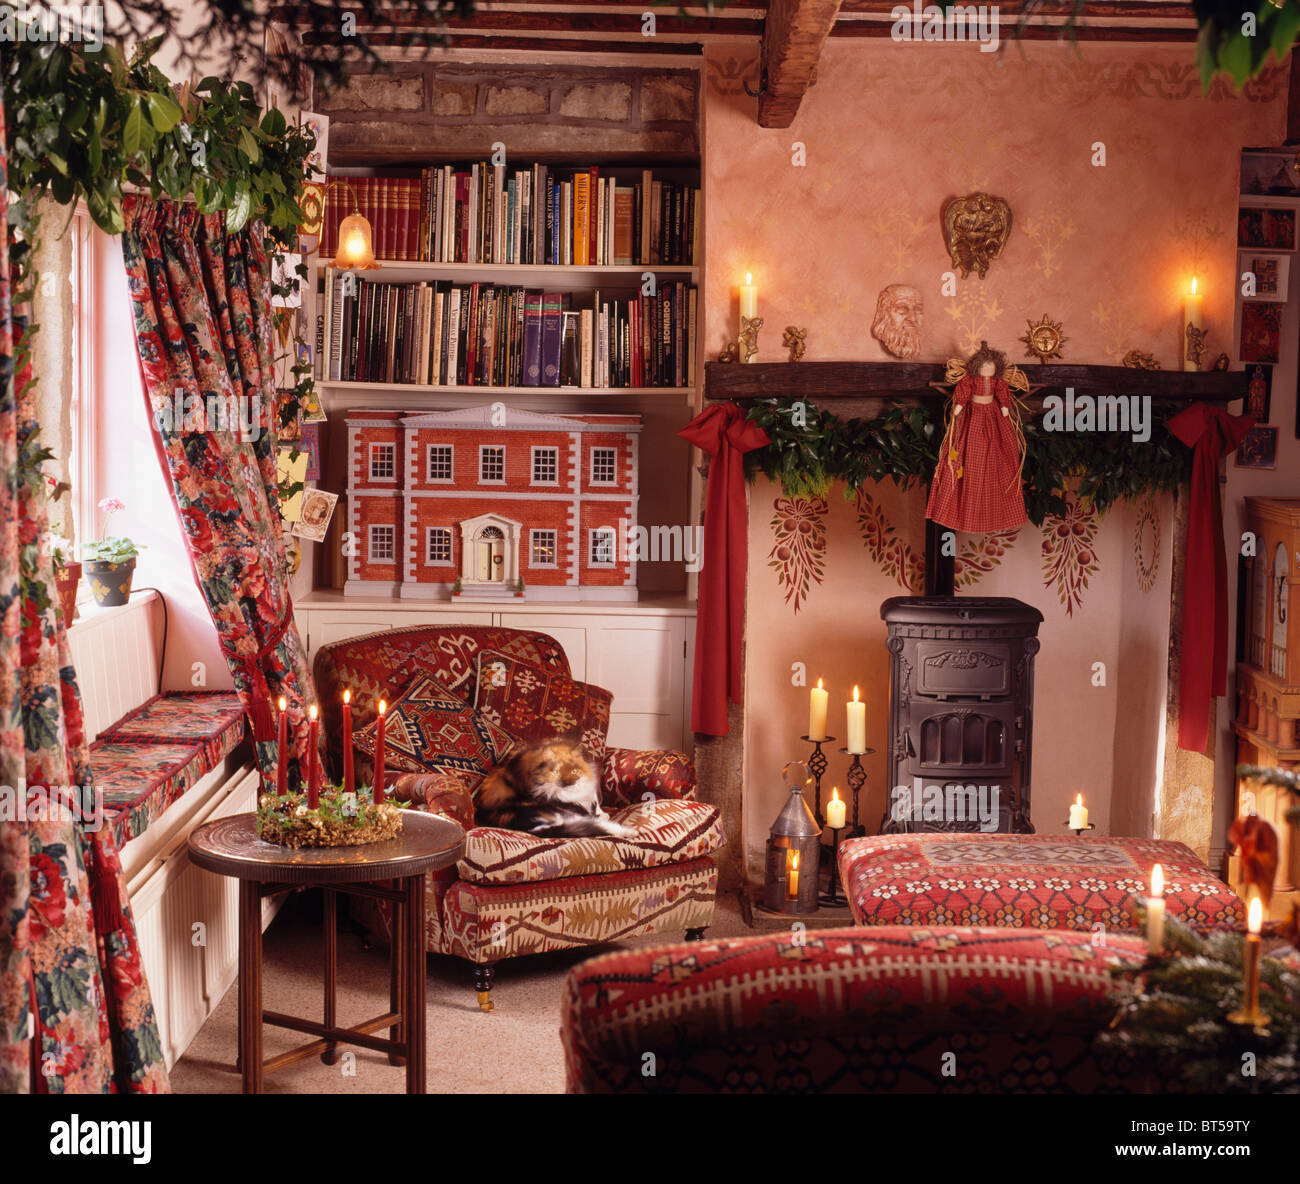 Le candele accese il camino con stufa a legna in cottage soggiorno decorato per il Natale con le bambole rosso-house sugli scaffali Foto Stock